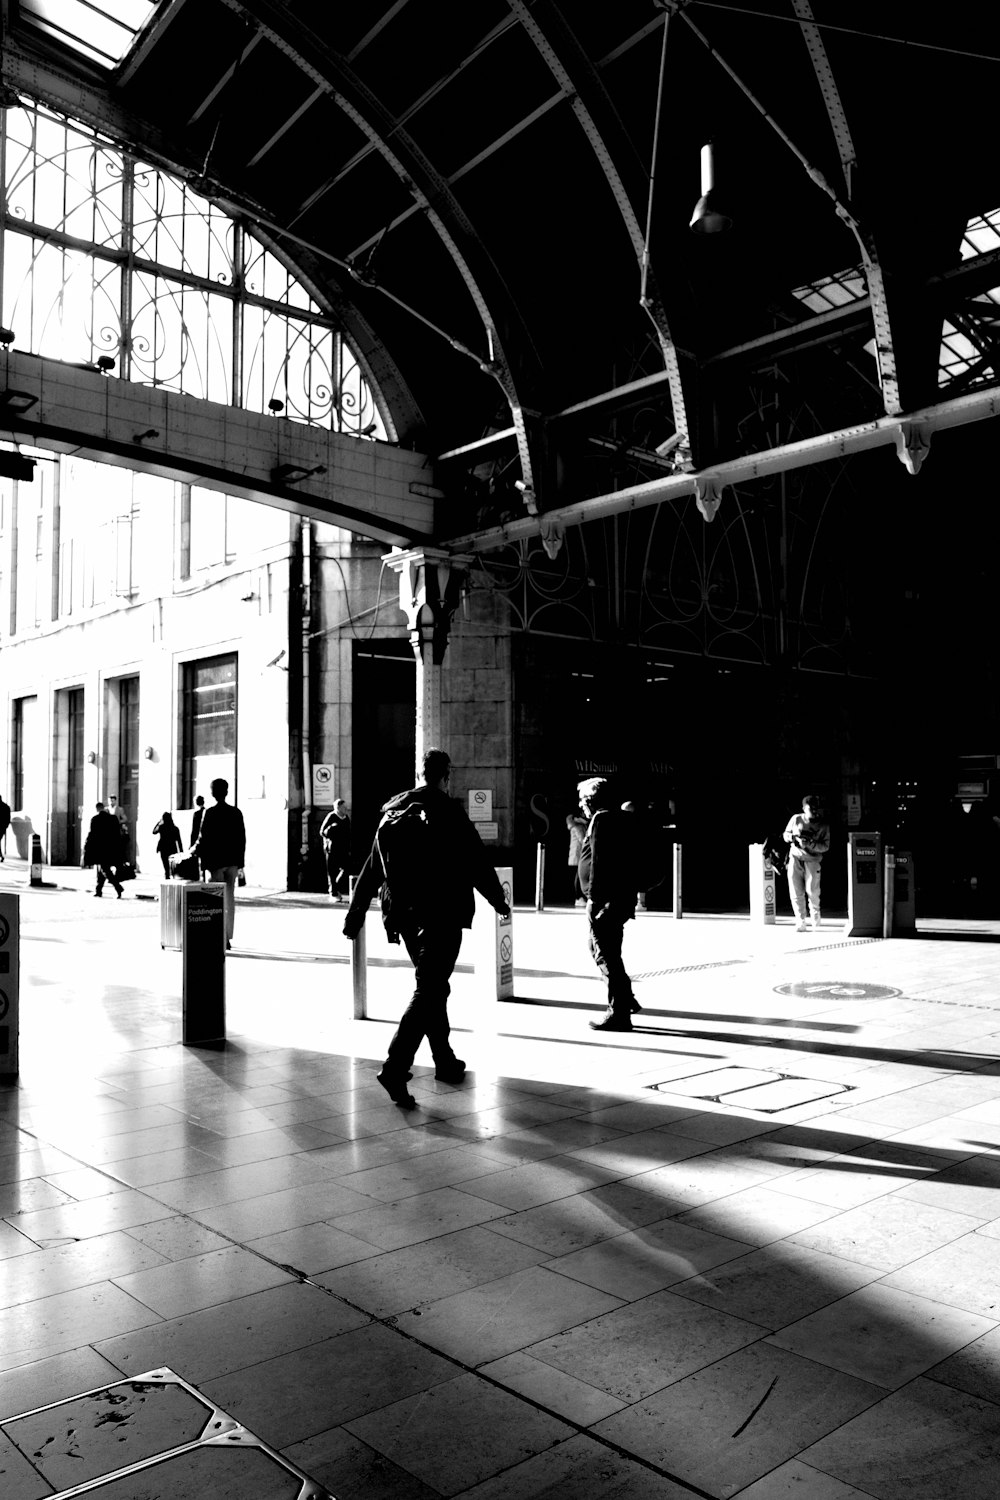 Una foto in bianco e nero di persone che camminano in una stazione ferroviaria